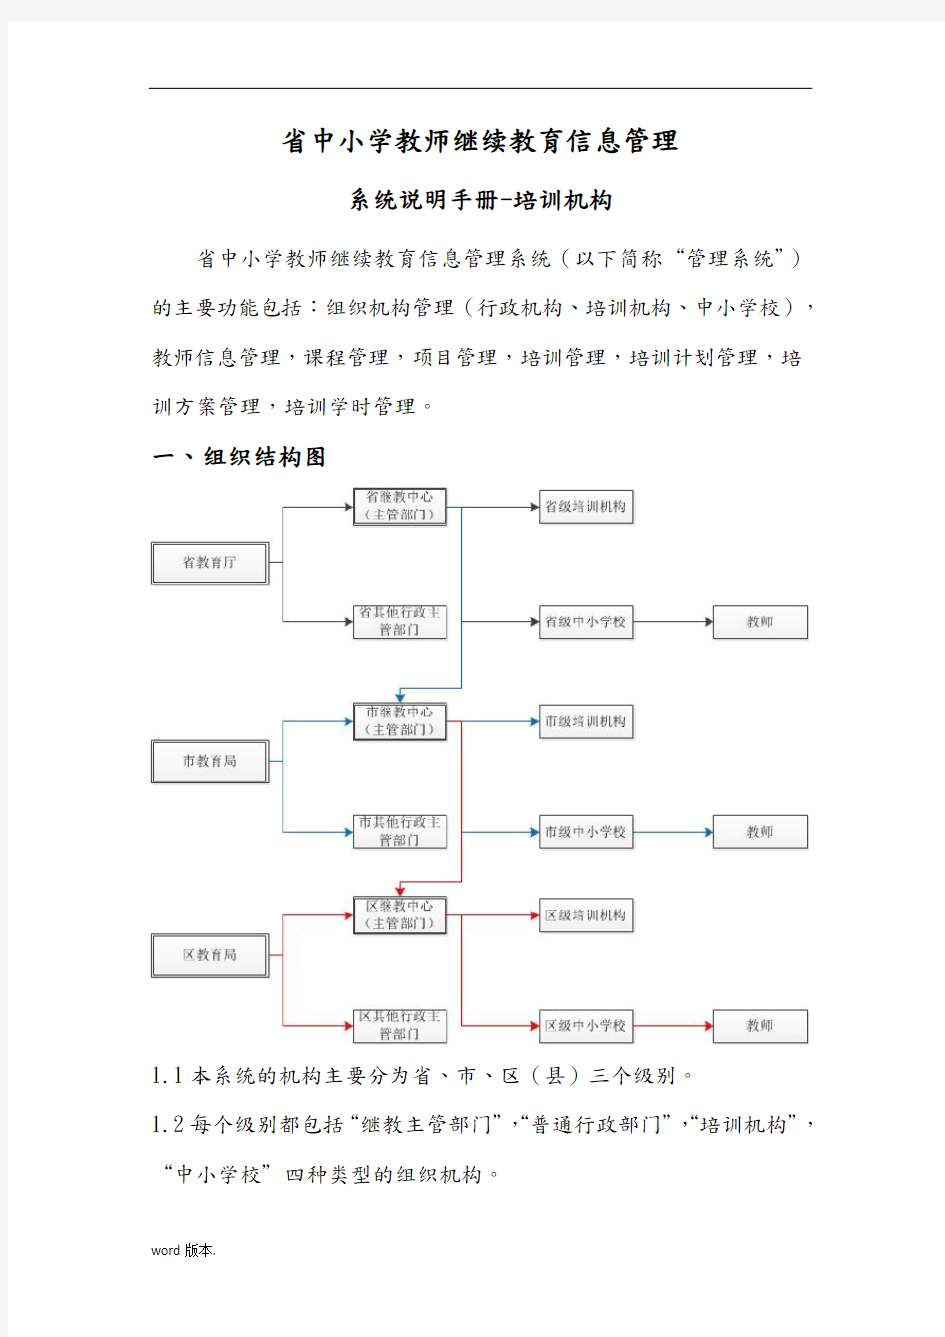 广东省中小学教师继续教育信息管理系统说明手册范本